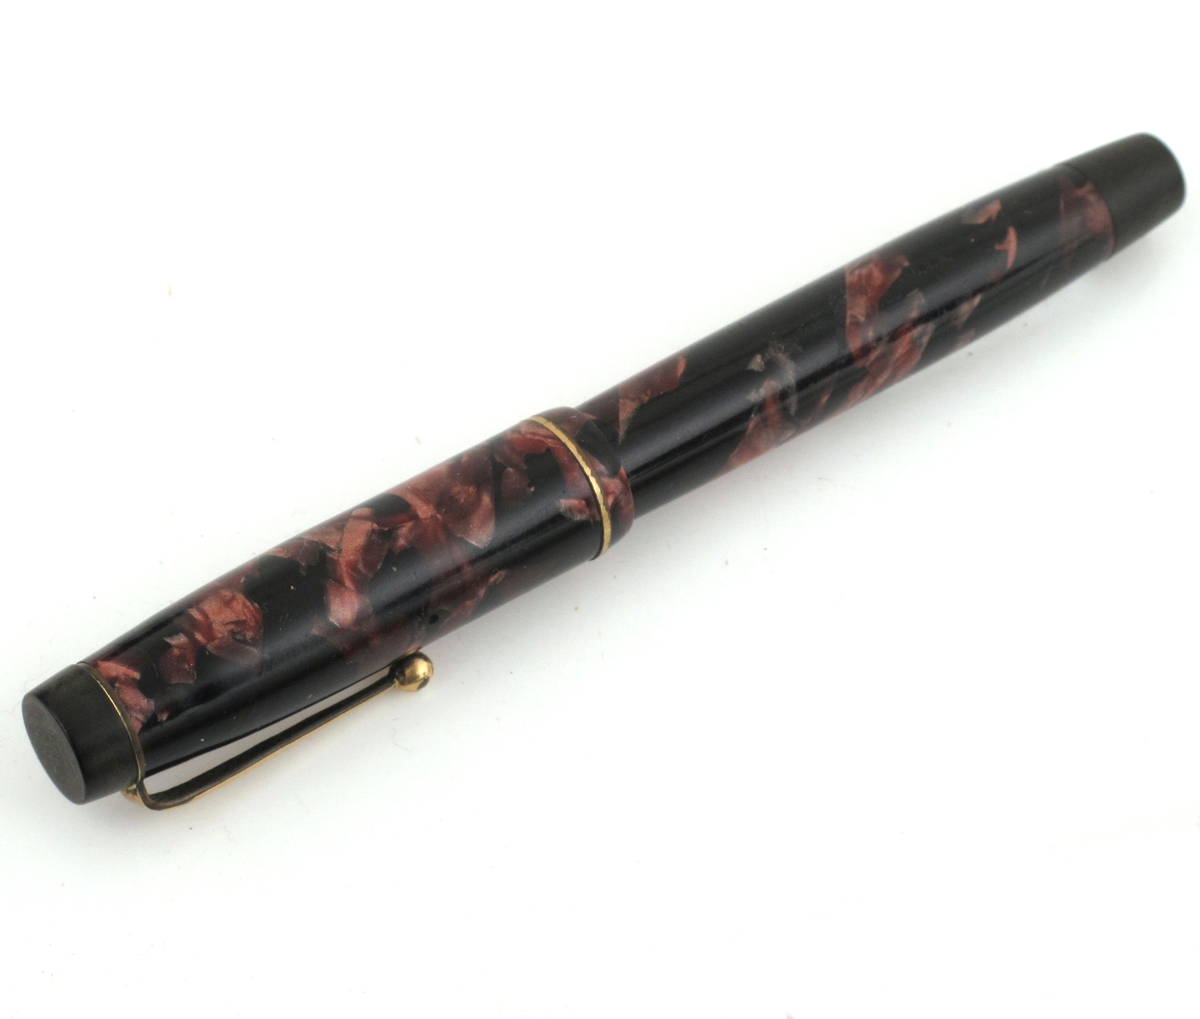 Fyllepenn, sort med mønster i rosavalører.
Pennen inneholder en beholder og blekk suges opp i beholderen fra et blekkhus.